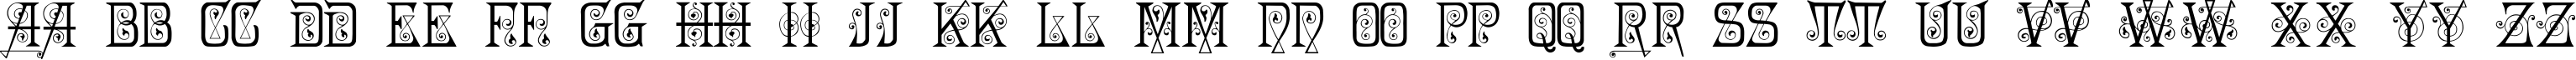 Пример написания английского алфавита шрифтом Penelope